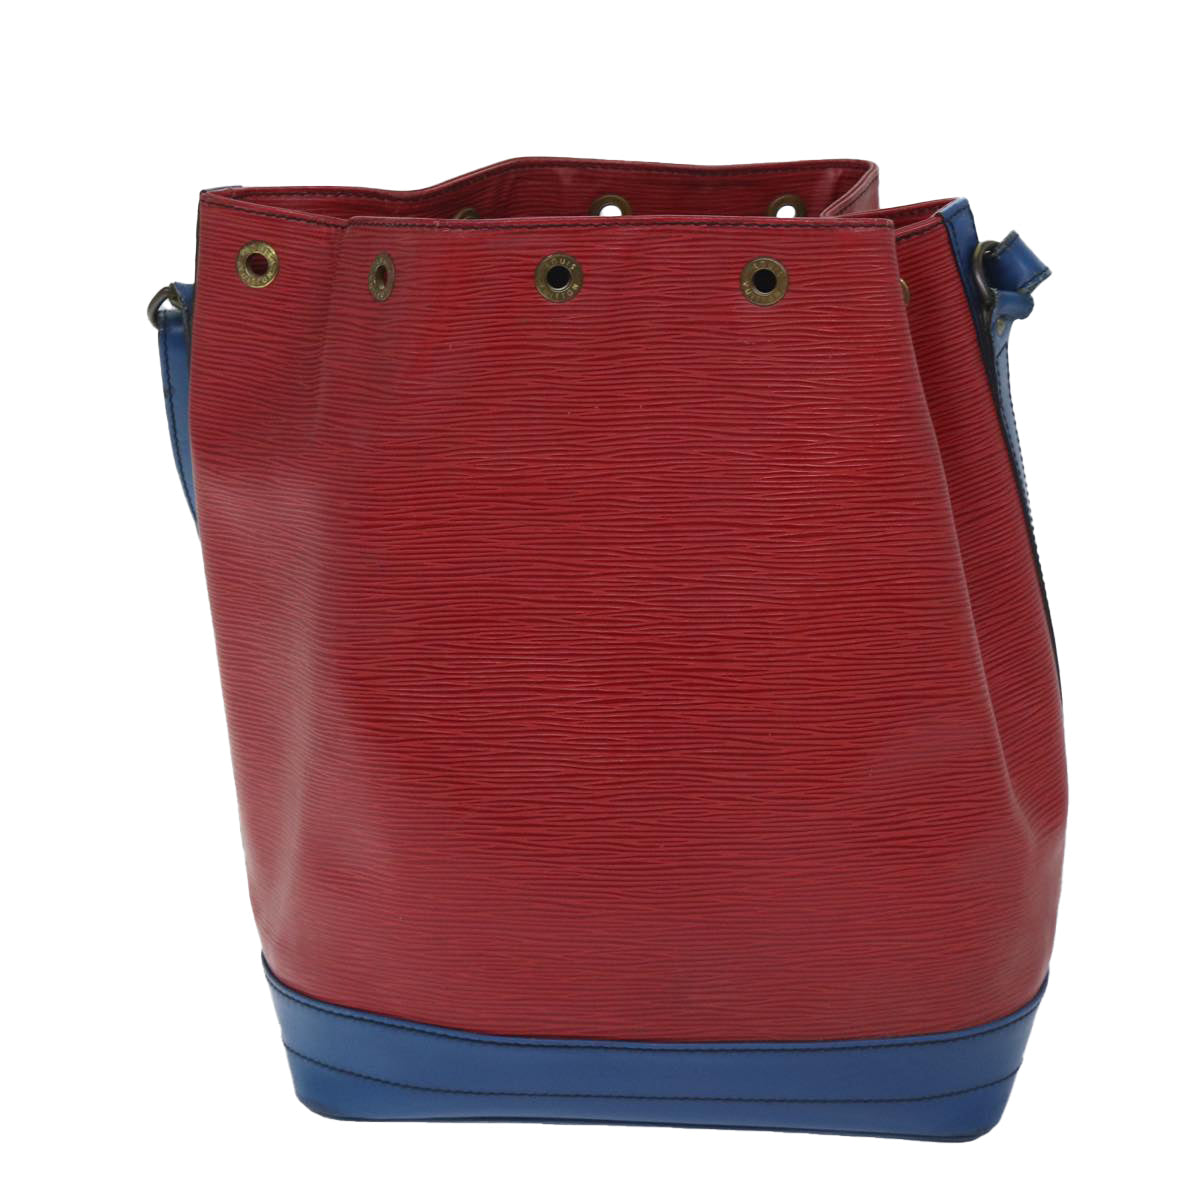 LOUIS VUITTON Epi Noe Shoulder Bag Bicolor Red Blue M44084 LV Auth bs13230 - 0